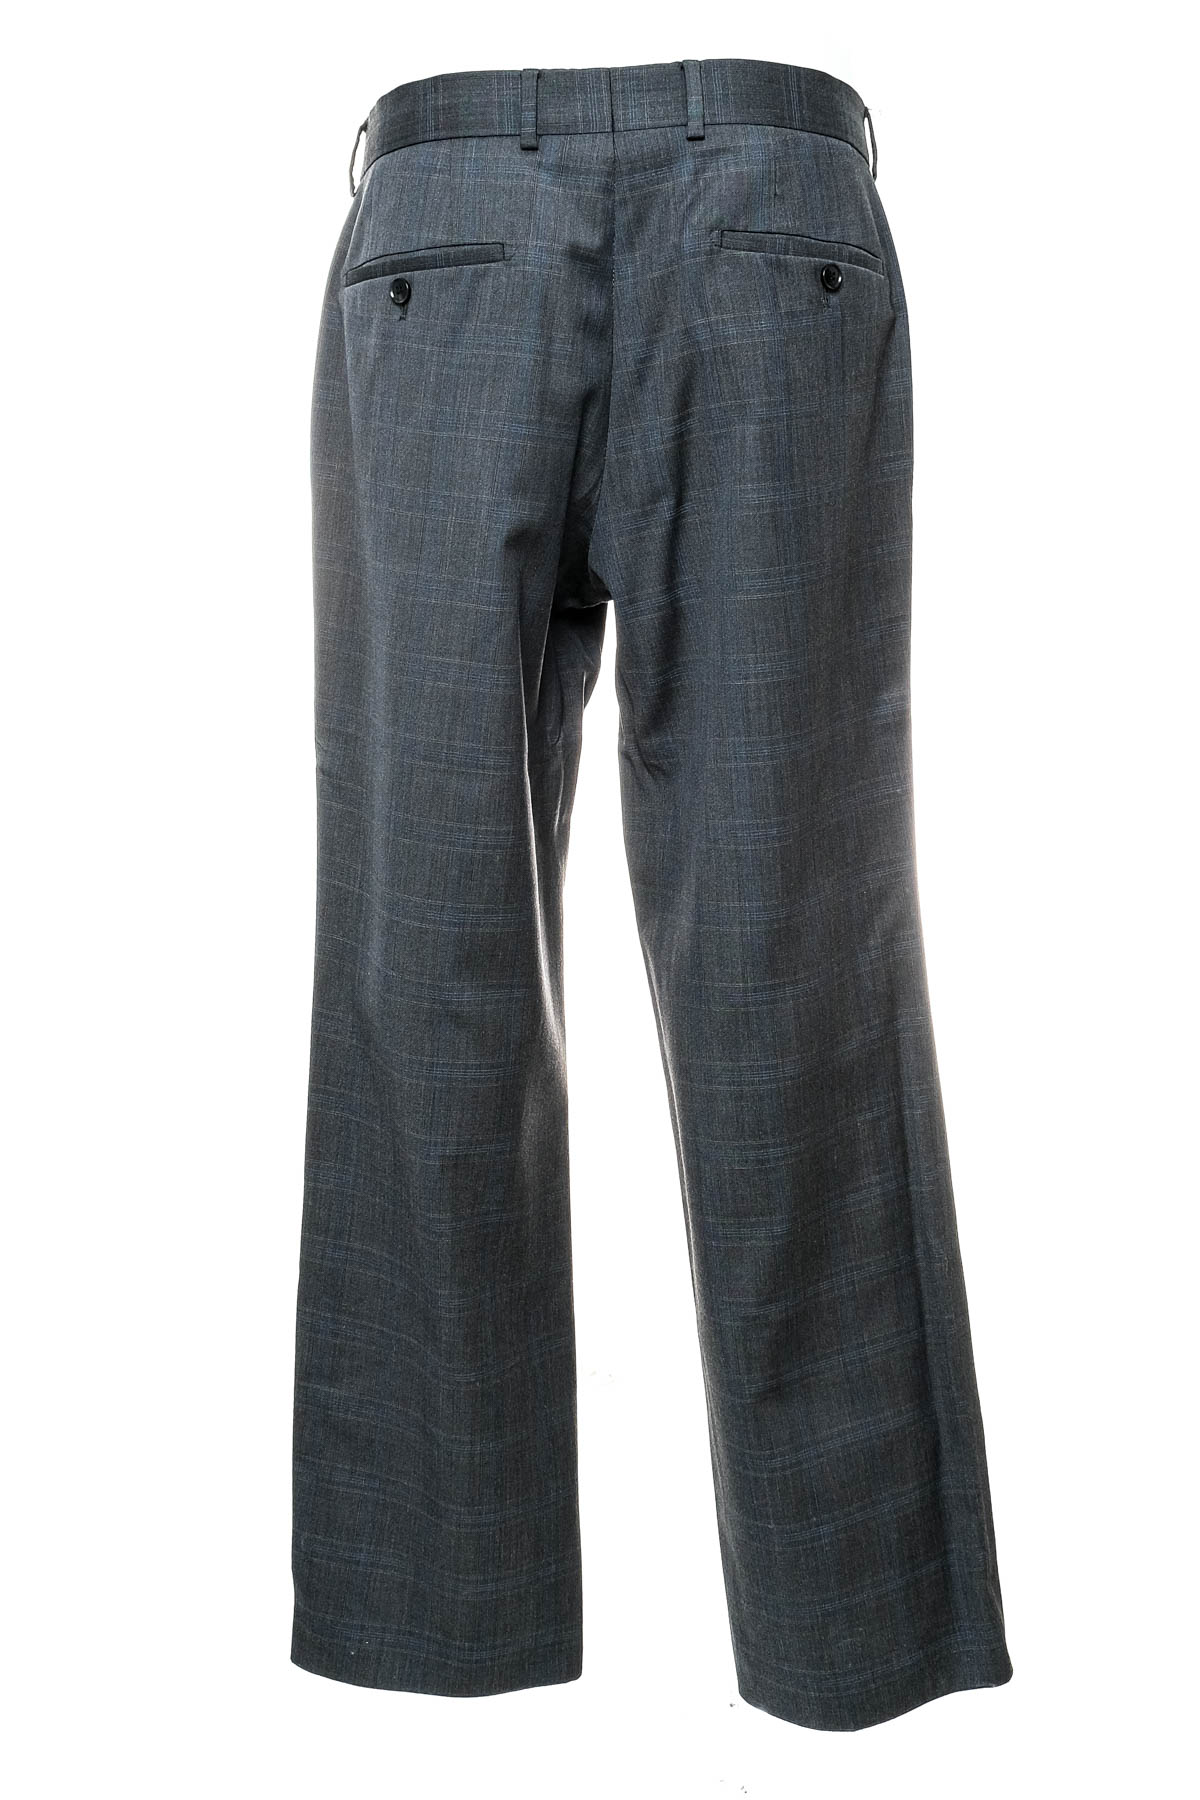 Men's trousers - HUGO BOSS - 1